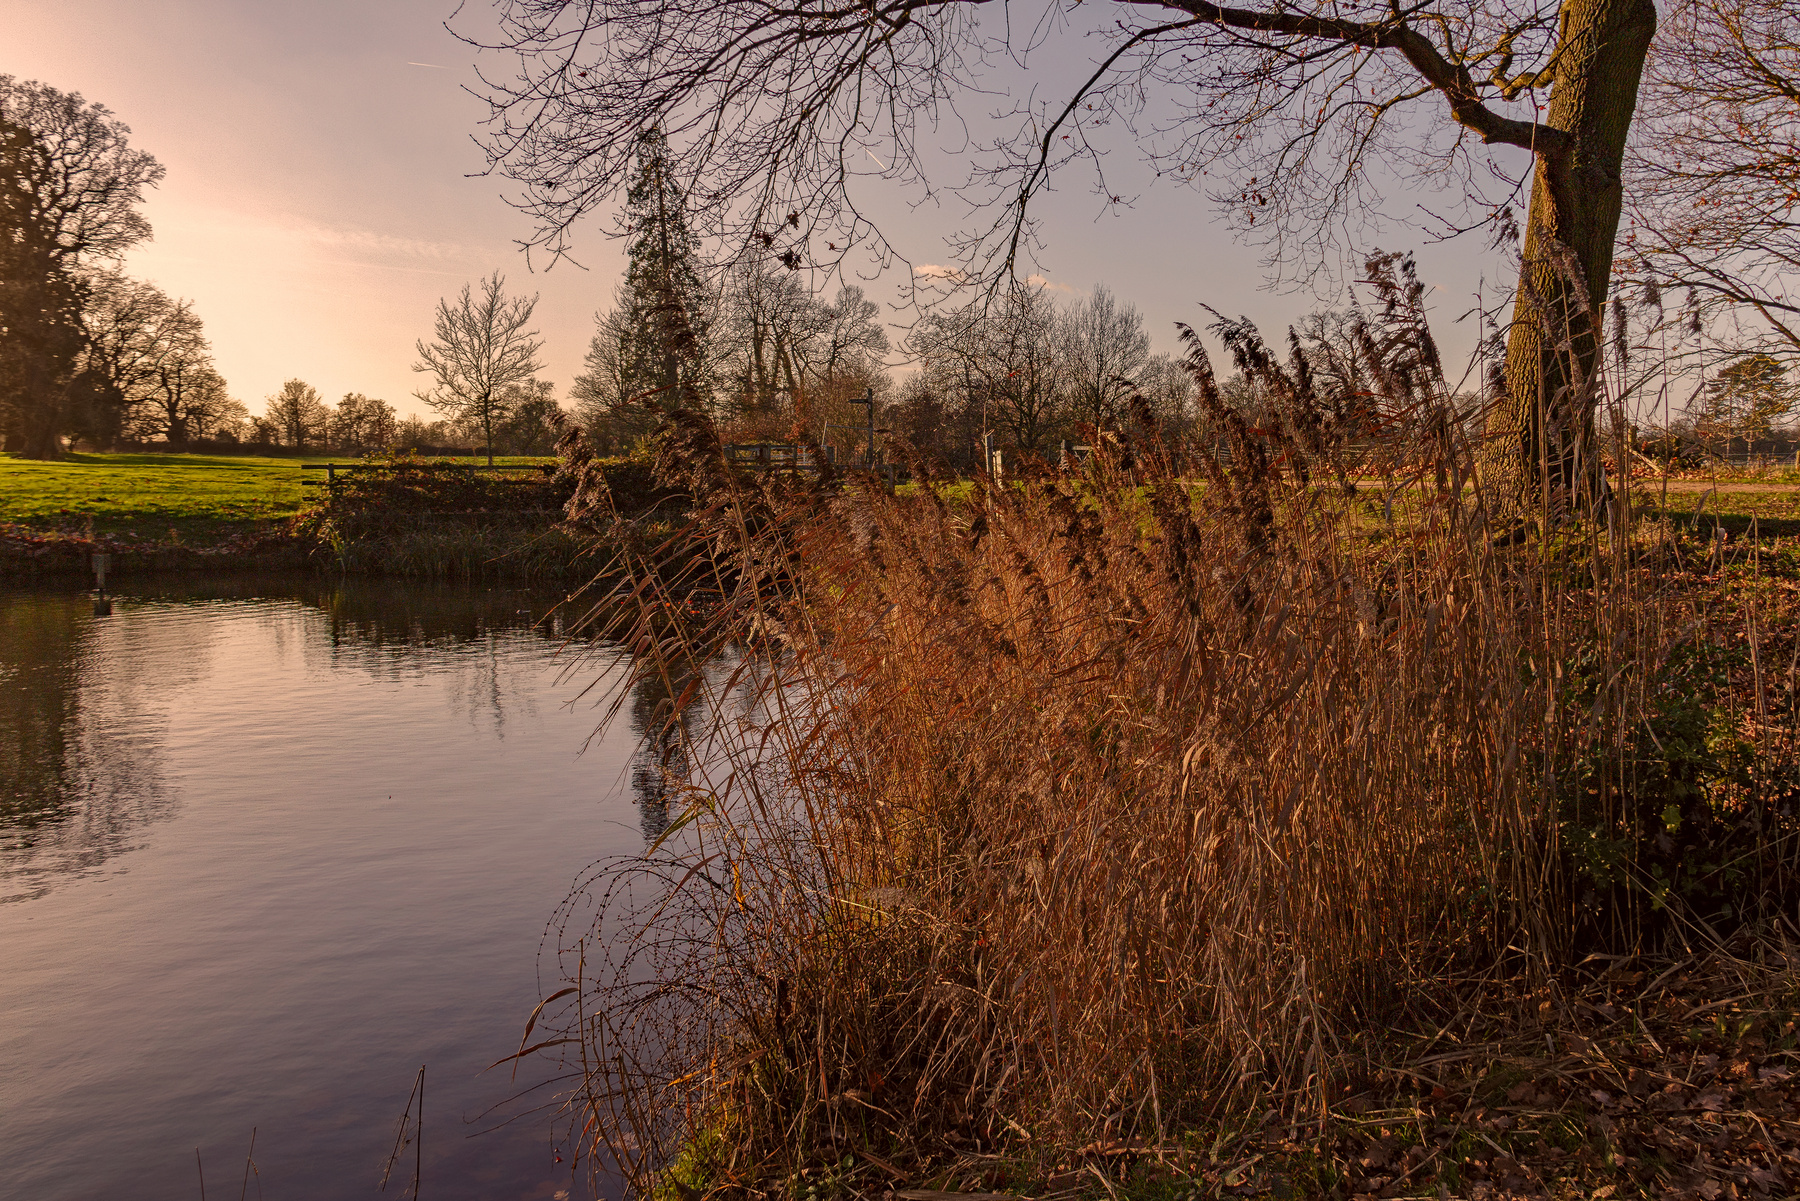 Английская зима природа закат солнце ветви деревья лучи озеро вода растения тростник осока трава